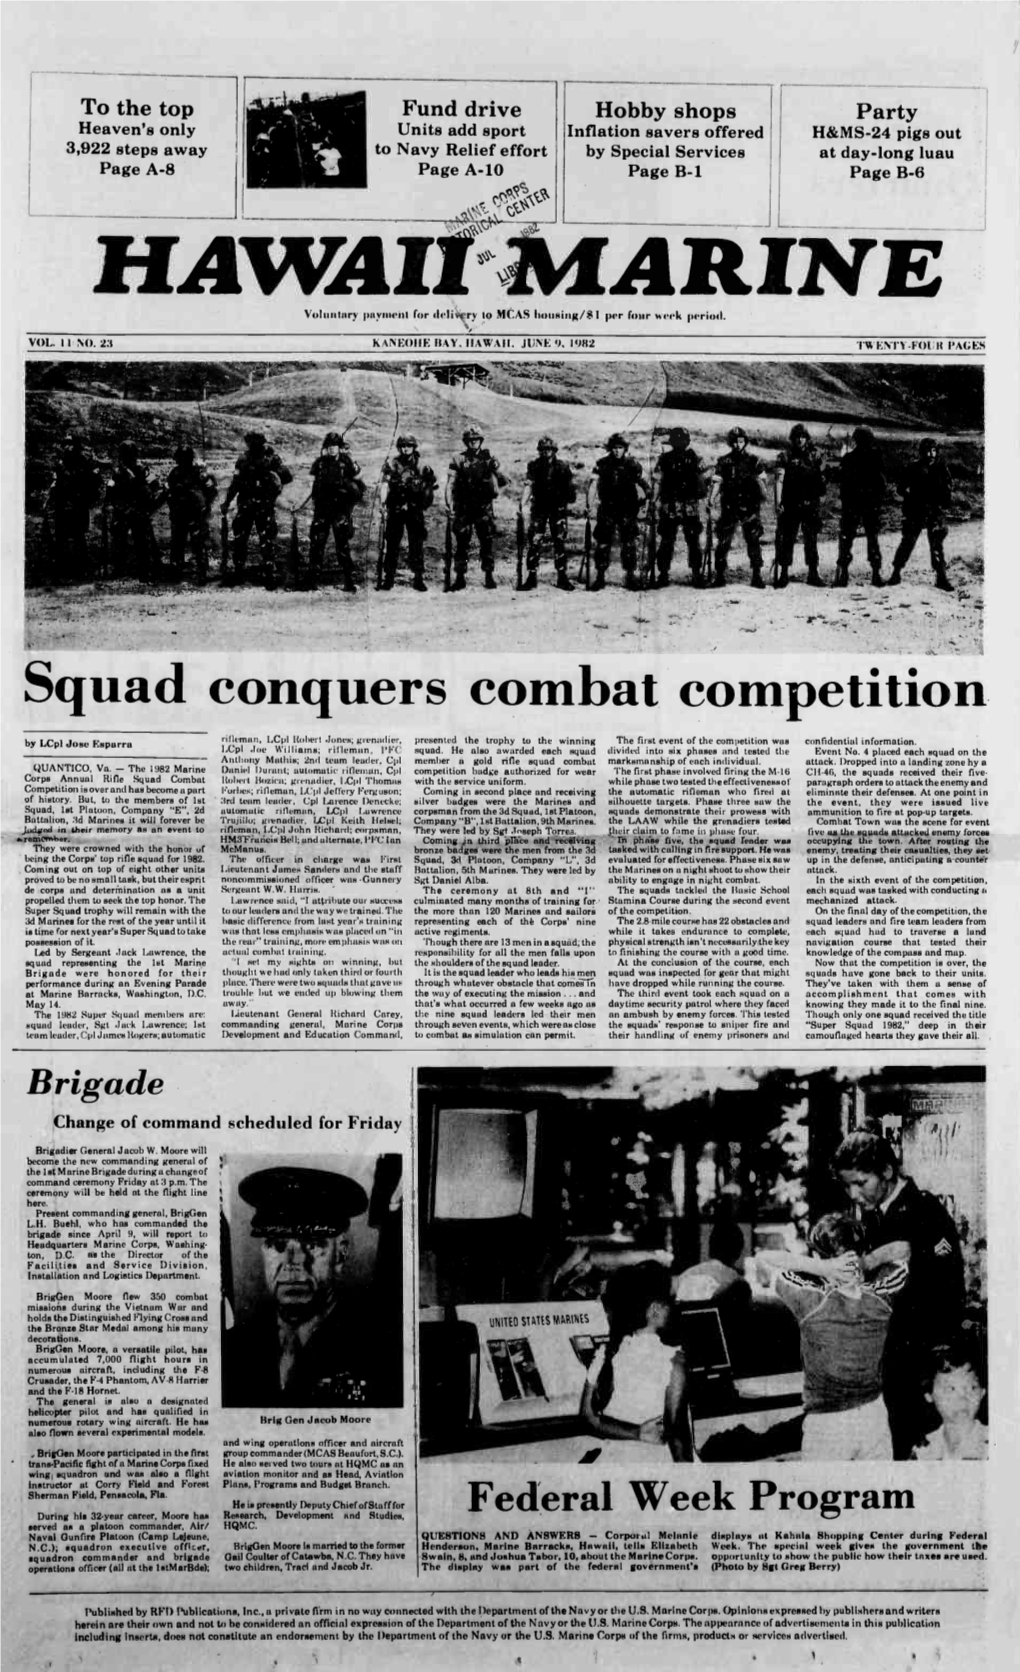 Squad Conquers Combat Competition